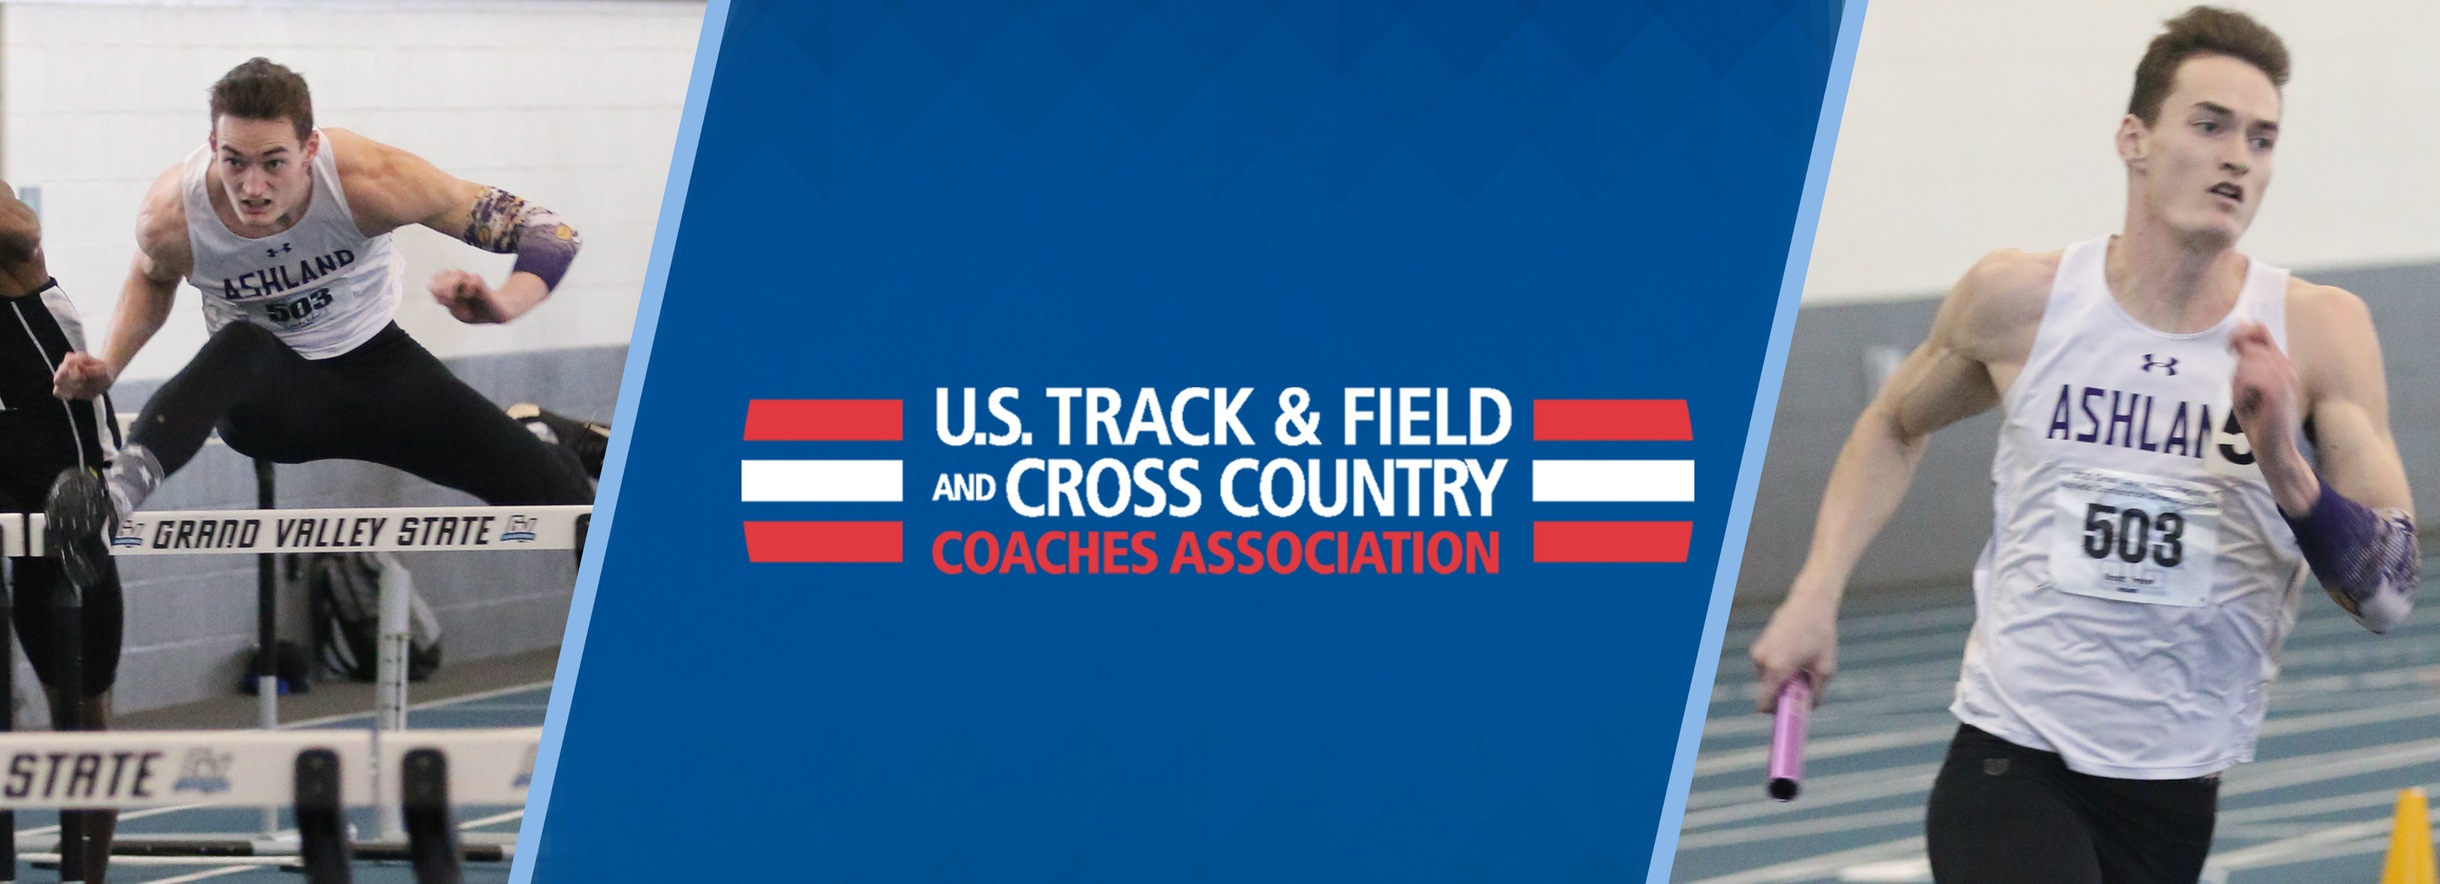 Ashland's Trevor Bassitt Named USTFCCCA National Men's Track Athlete of the Year